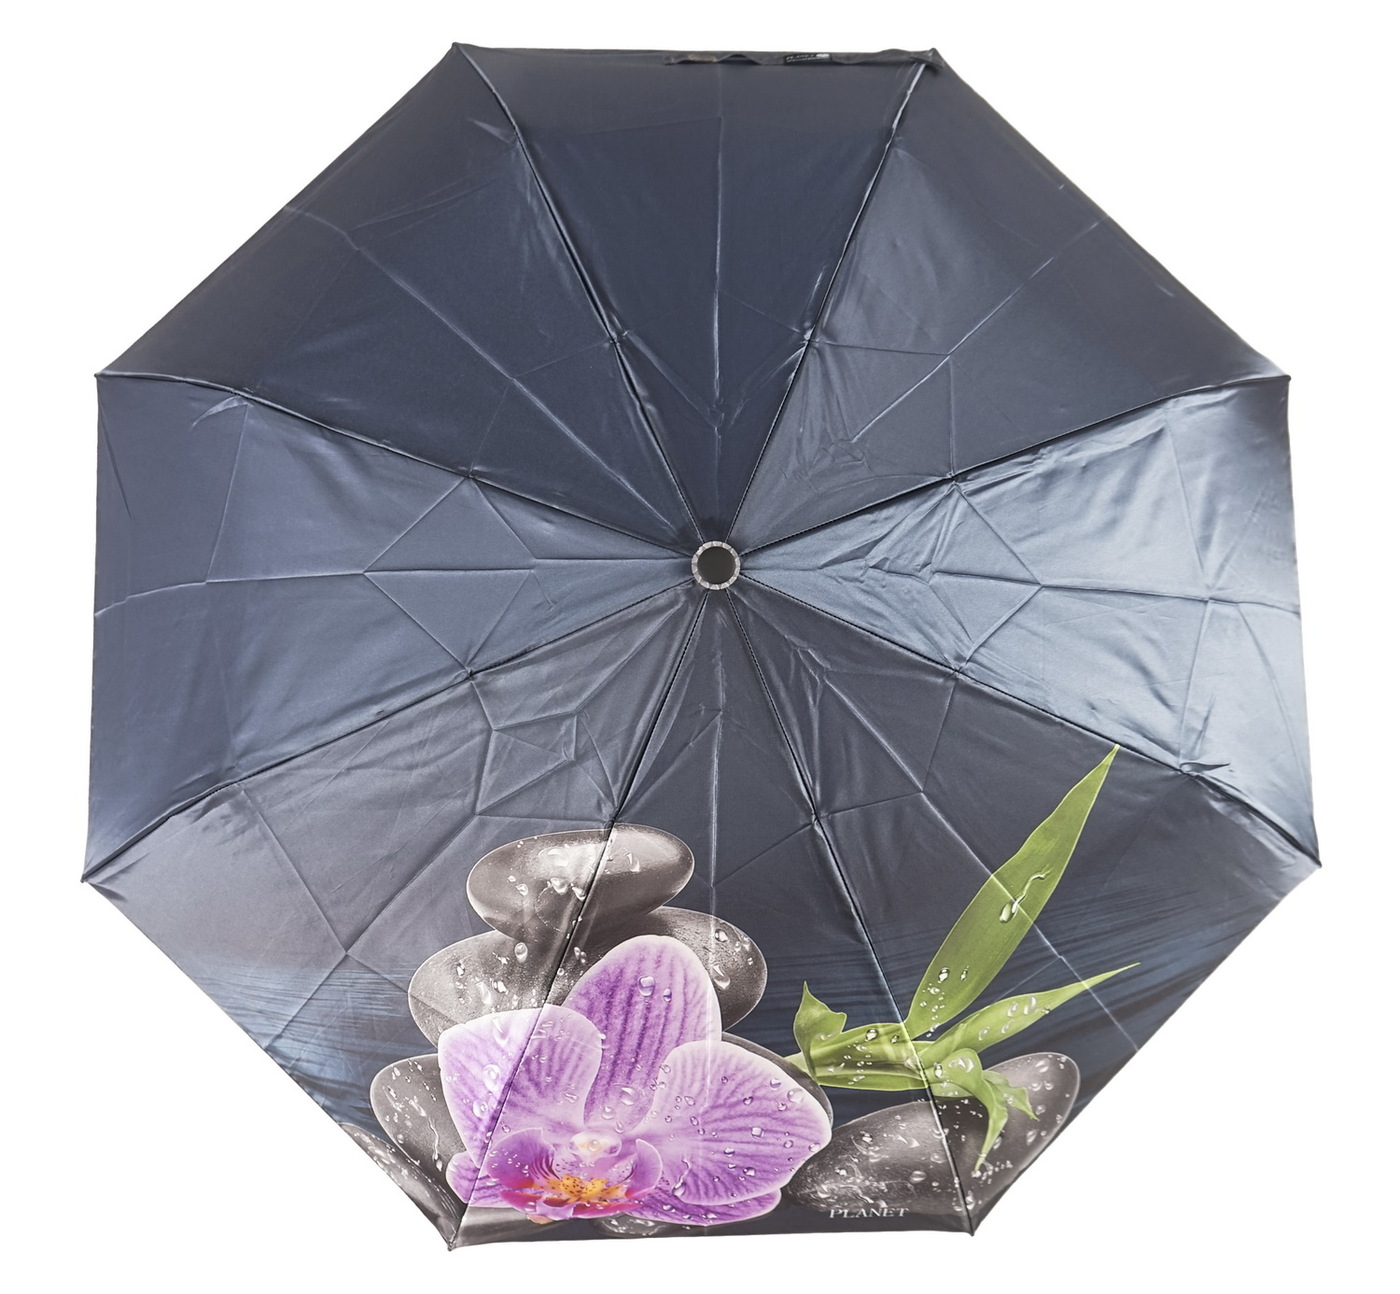 Где купить зонтик. Зонт h2000+. Зонт Bizzotto Салерно 0795370. Isotoner зонт женский 09496. Зонт Bizzotto Салерно 0795712.